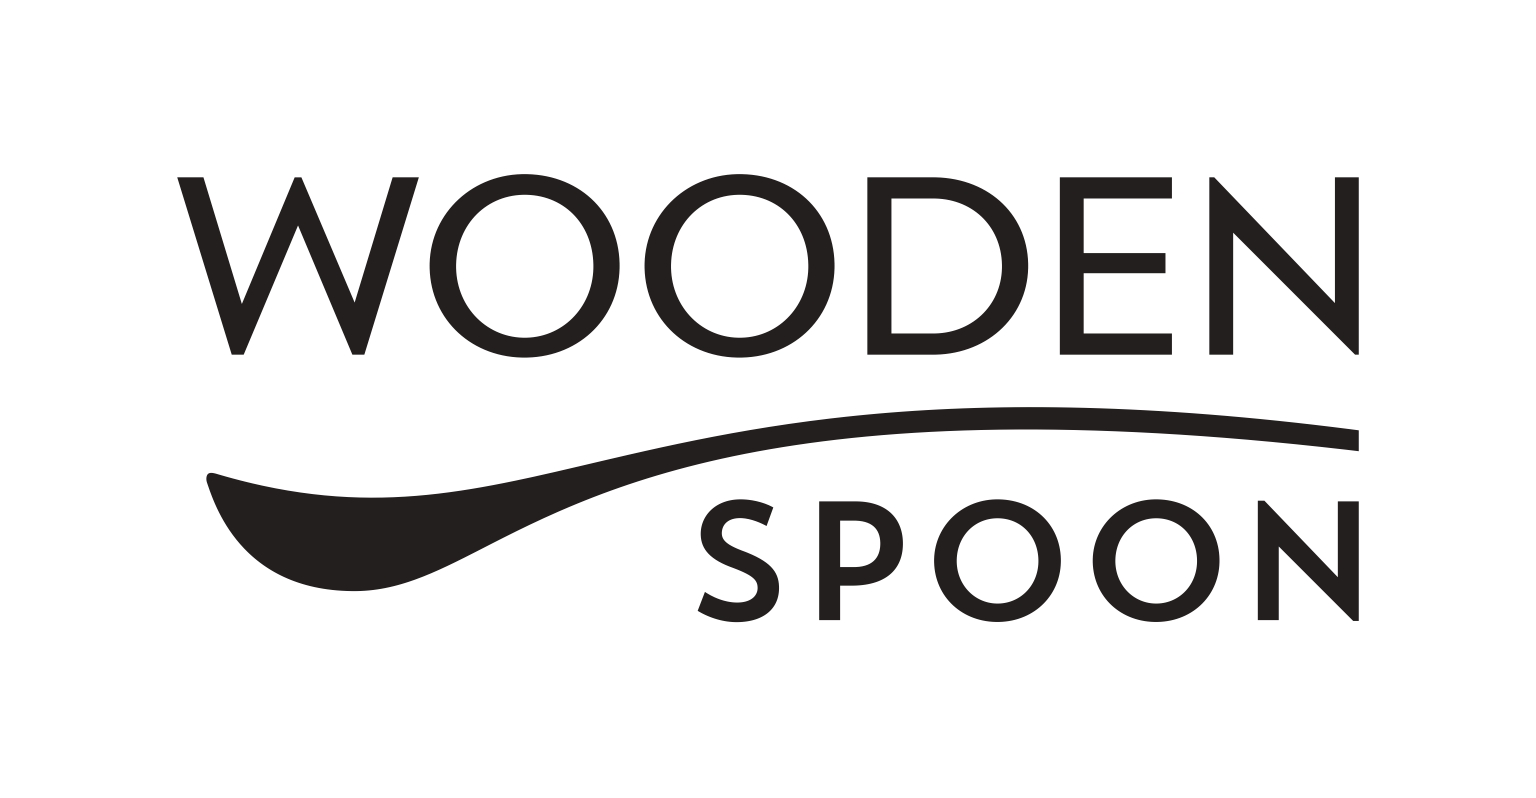 Wooden spoon - logo